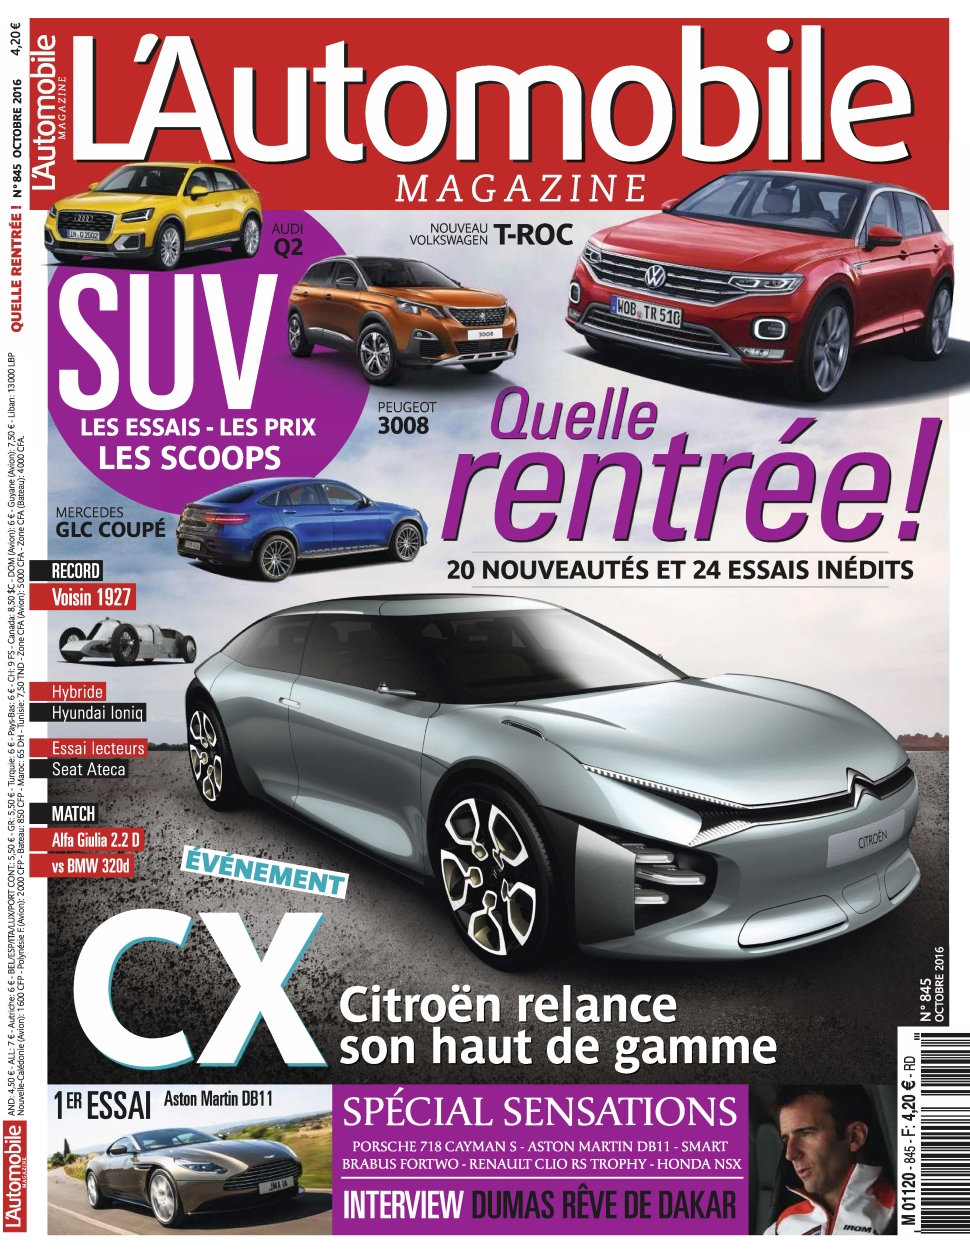 L'Automobile Magazine N°845 - Octobre 2016 